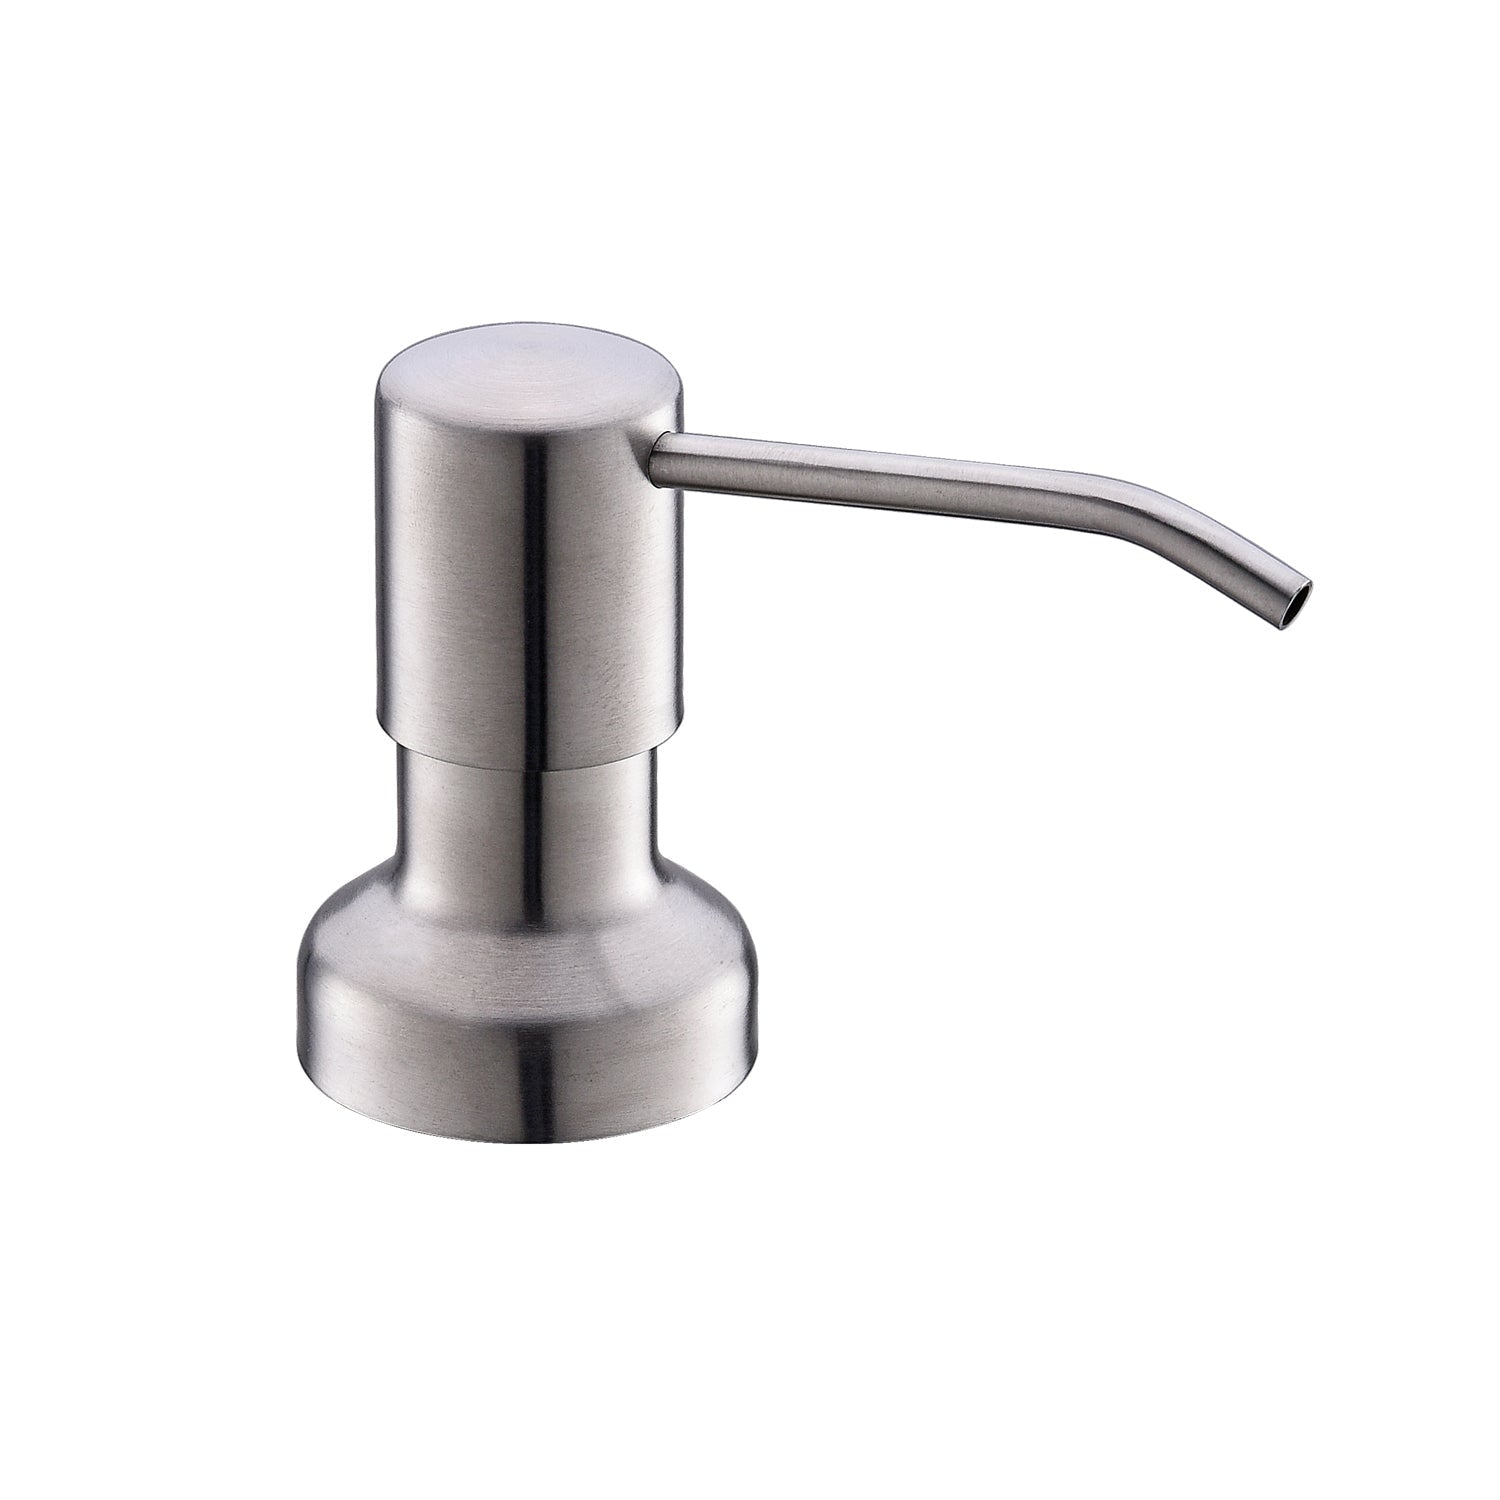 DAX Round Kitchen Sink Soap Dispenser, Deck Mount, Brass Body, 2-1/2 x 12-3/8 x 3-5/8 Inches (DAX-1002)